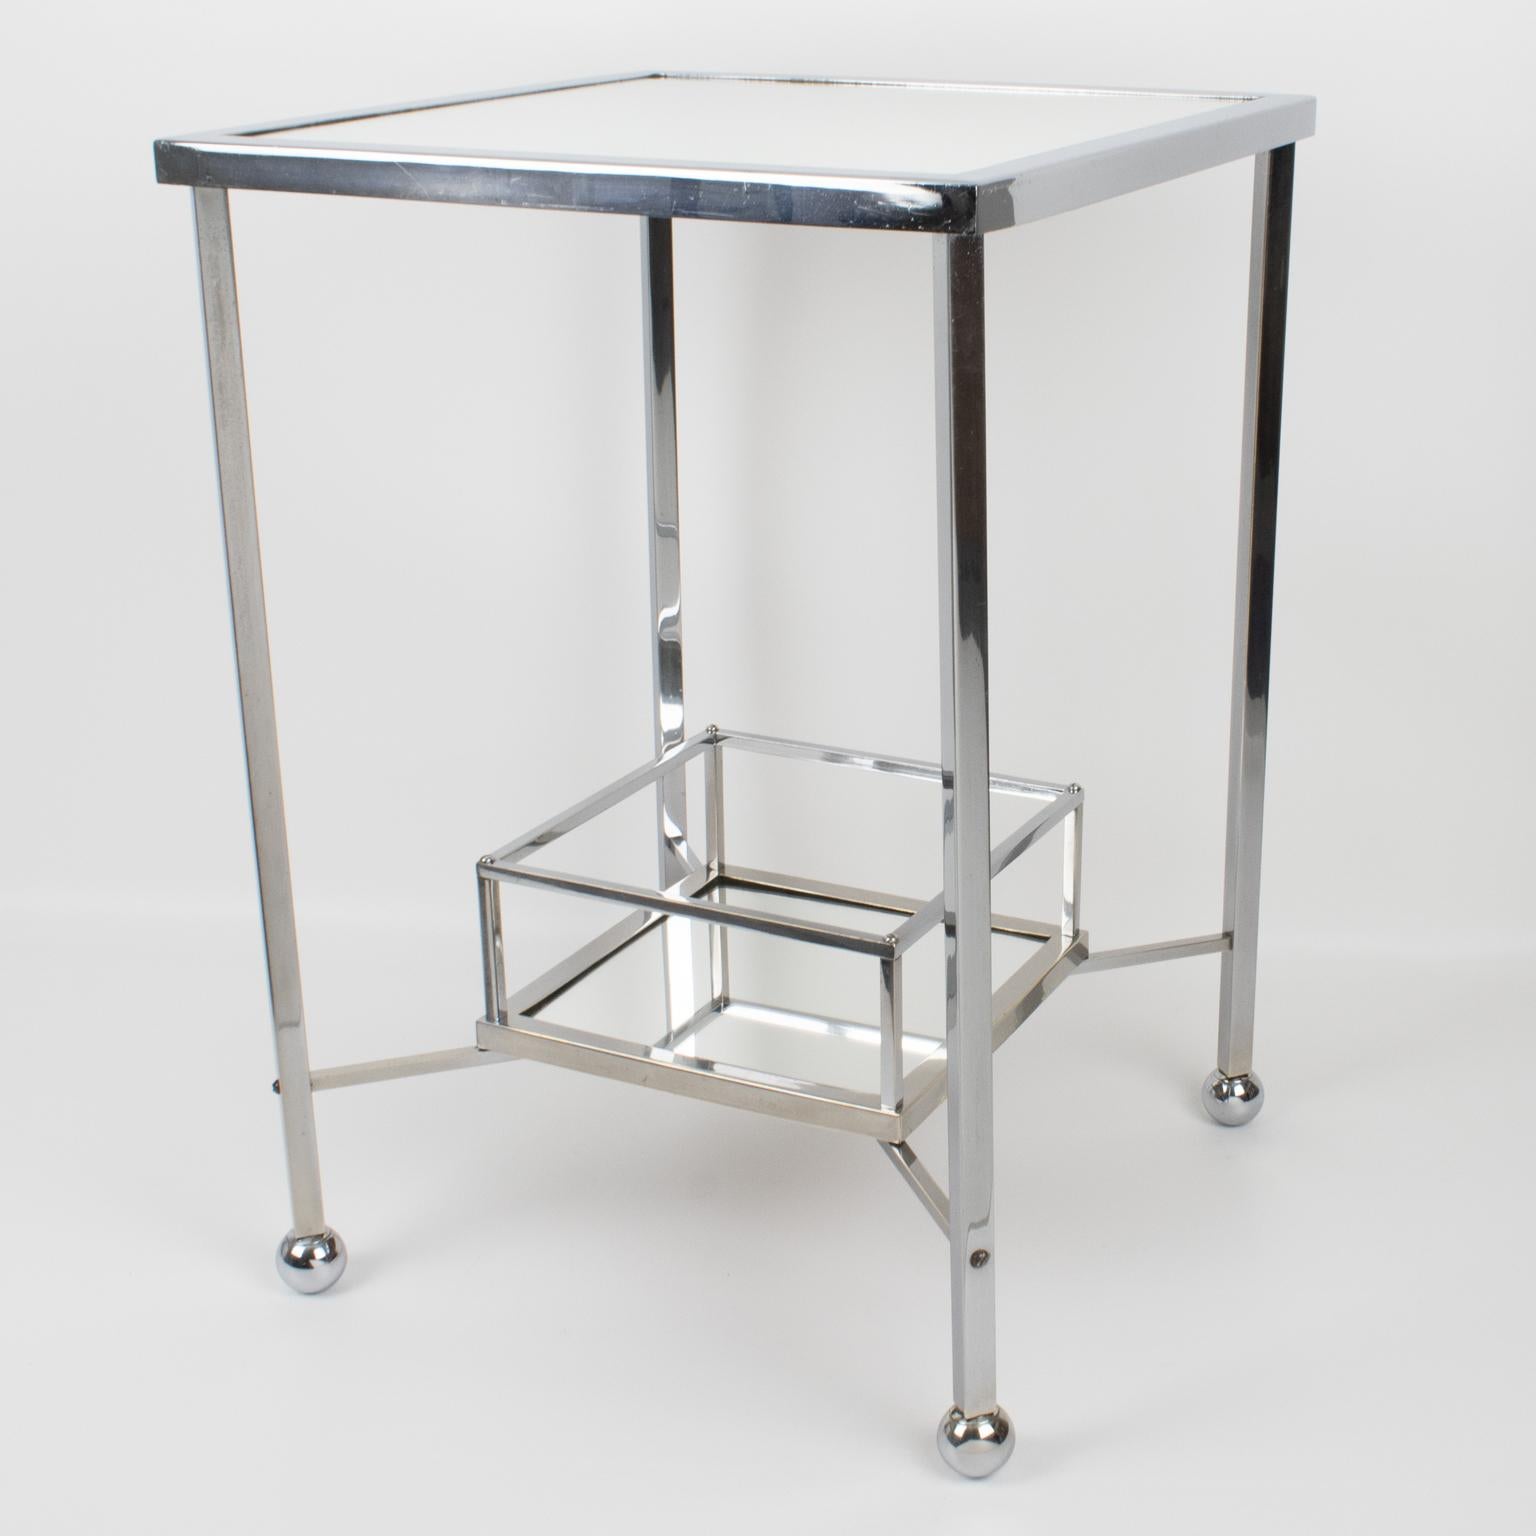 Jacques Adnet (1901 - 1984) a conçu ce superbe bar ou table d'appoint Art déco dans les années 1930. Le design minimaliste chic arbore une forme carrée avec un plateau de table en verre miroir et un plateau à bouteilles sur le fond. La table est en